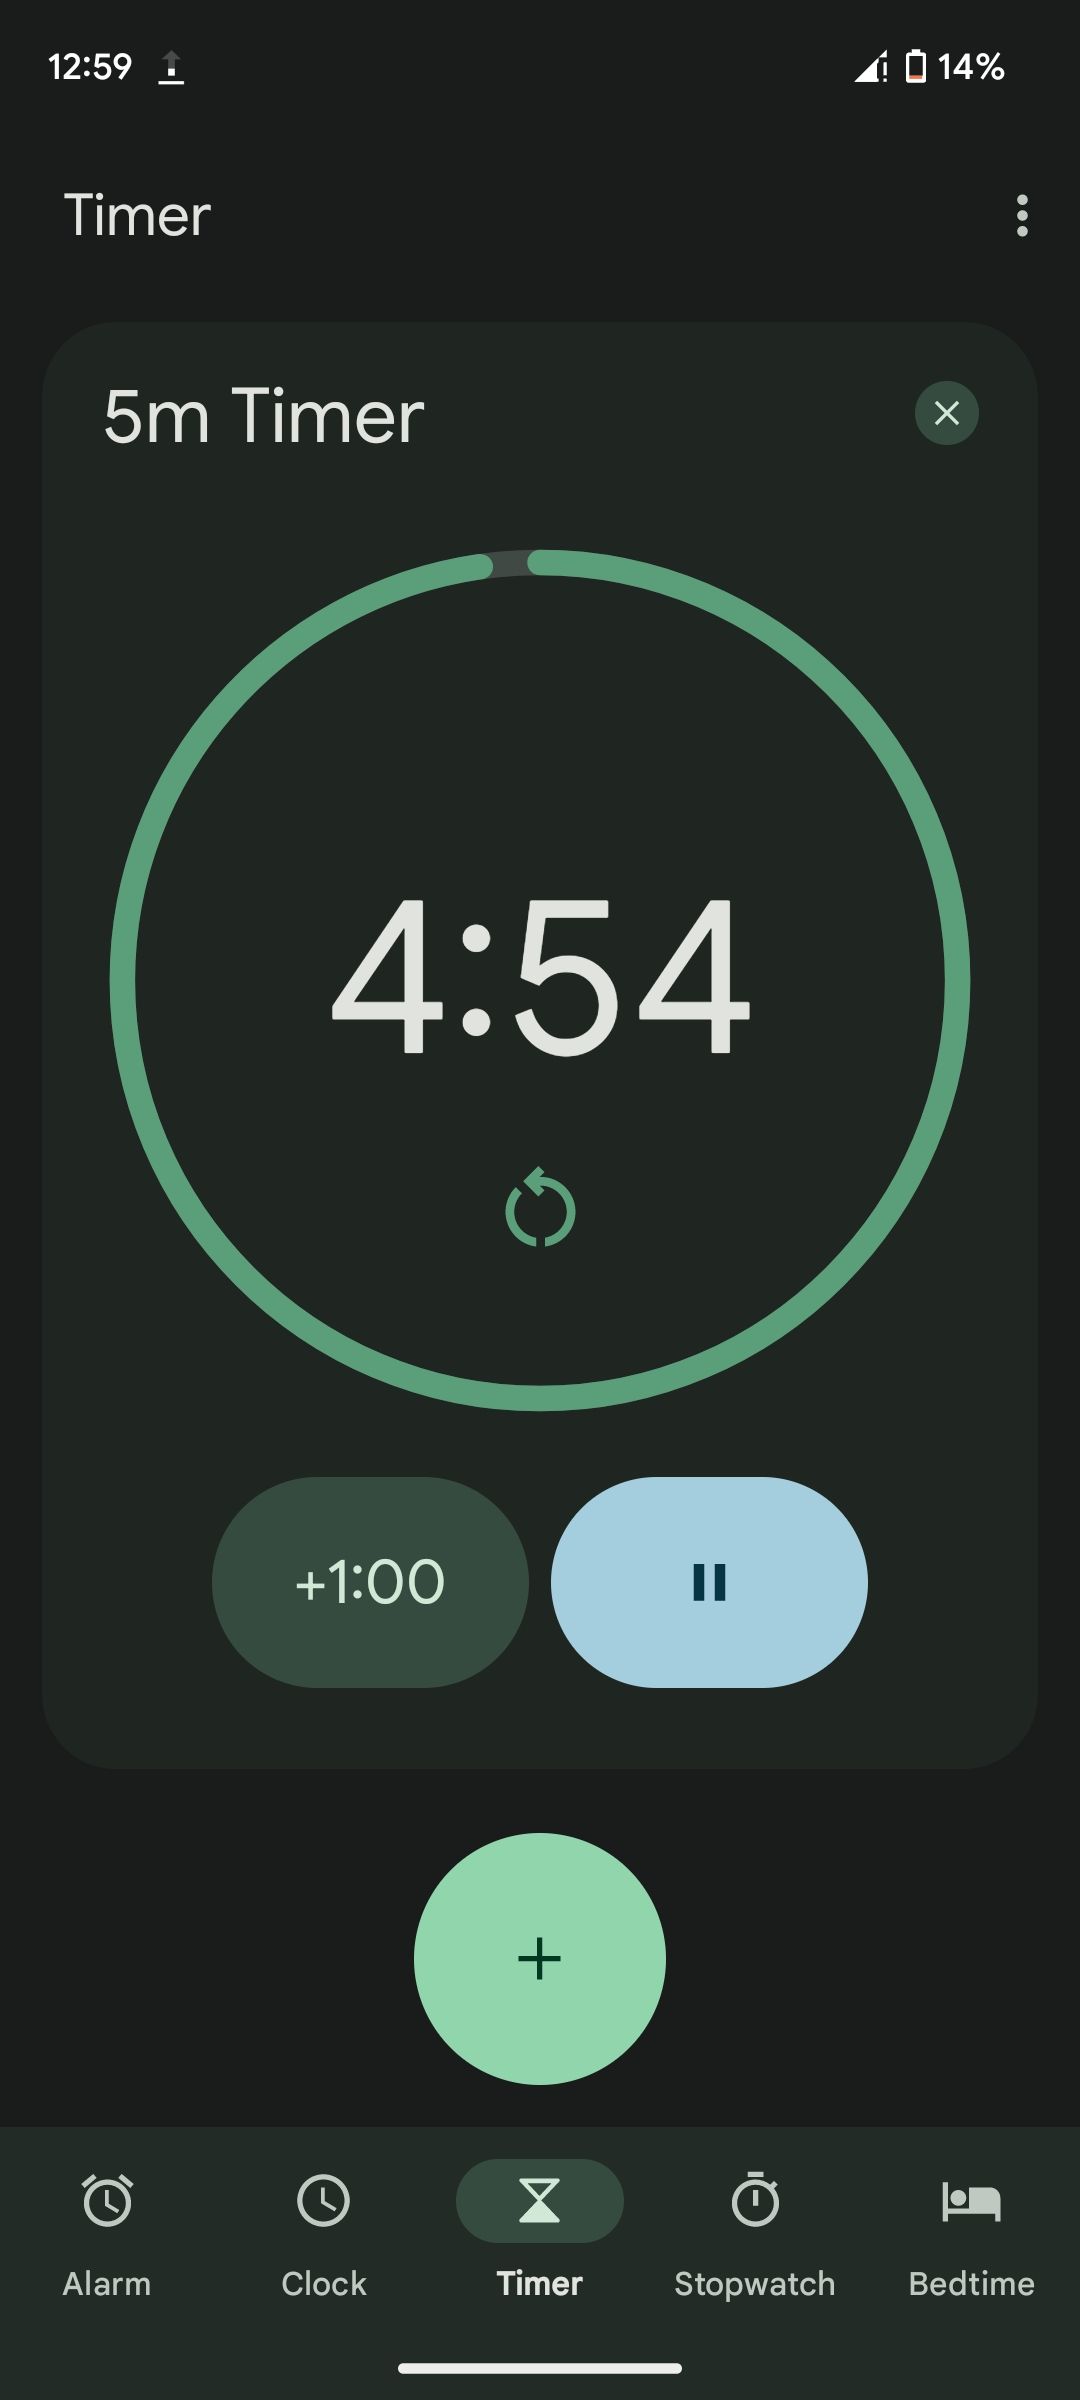 A timer running in Google's Clock app